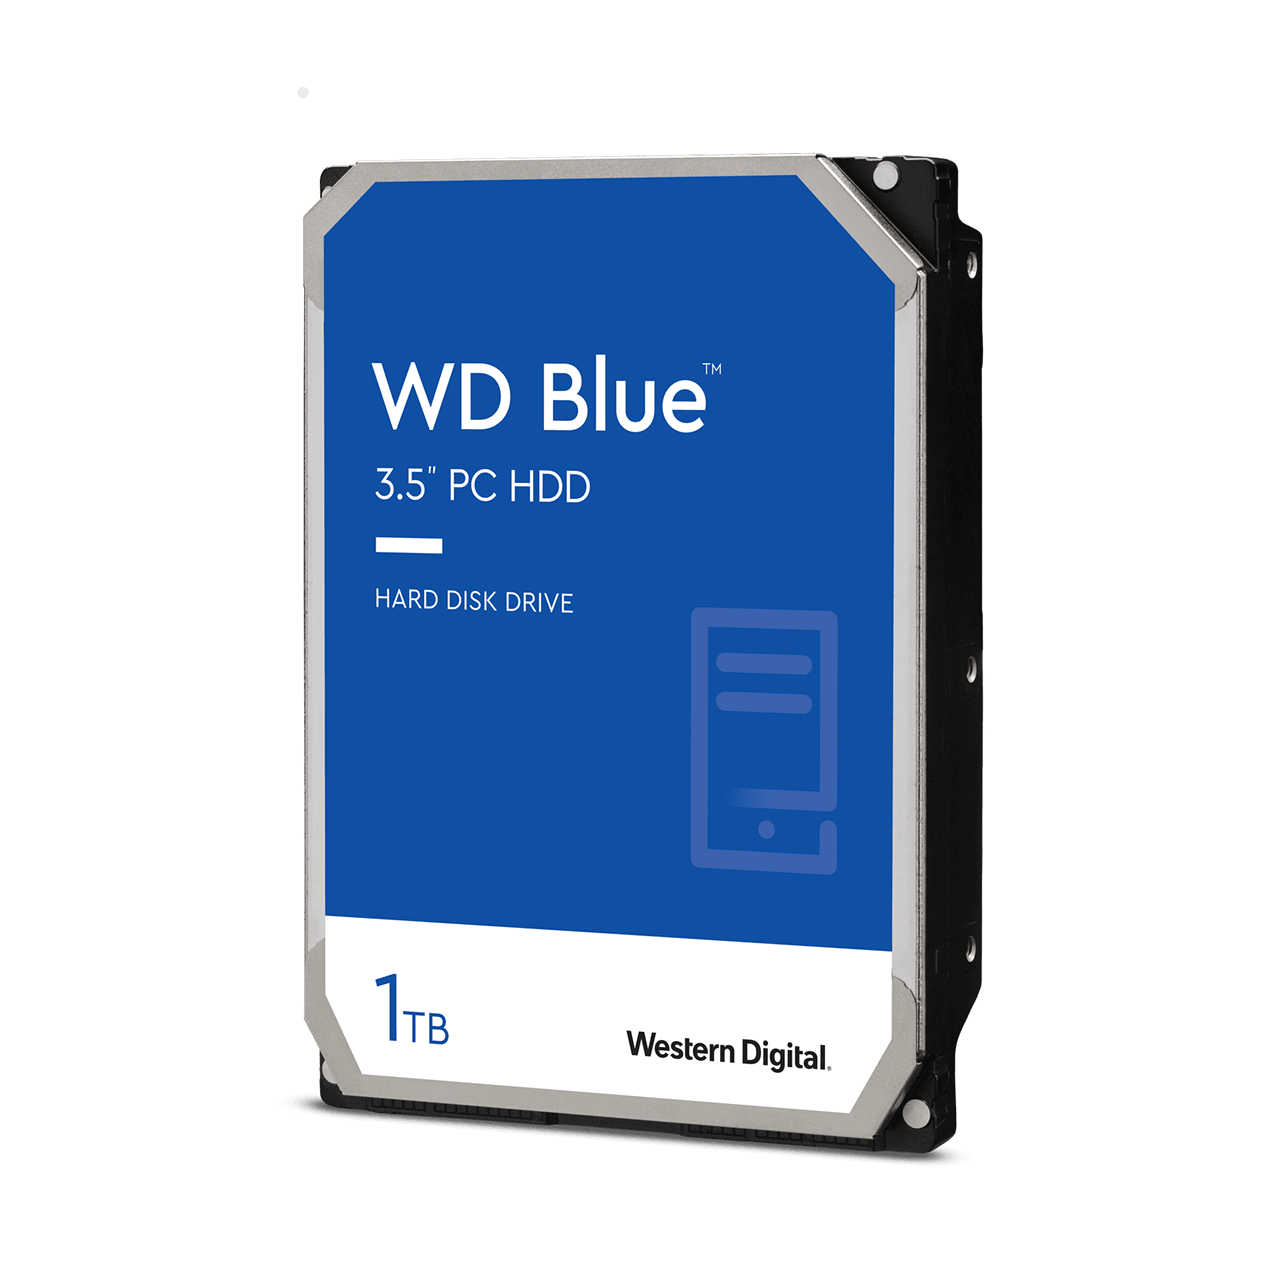 Western Digital WD Blue 3.5" PC HDD - WD10EZEX (64 MB, 7200 rpm, 1 TB)